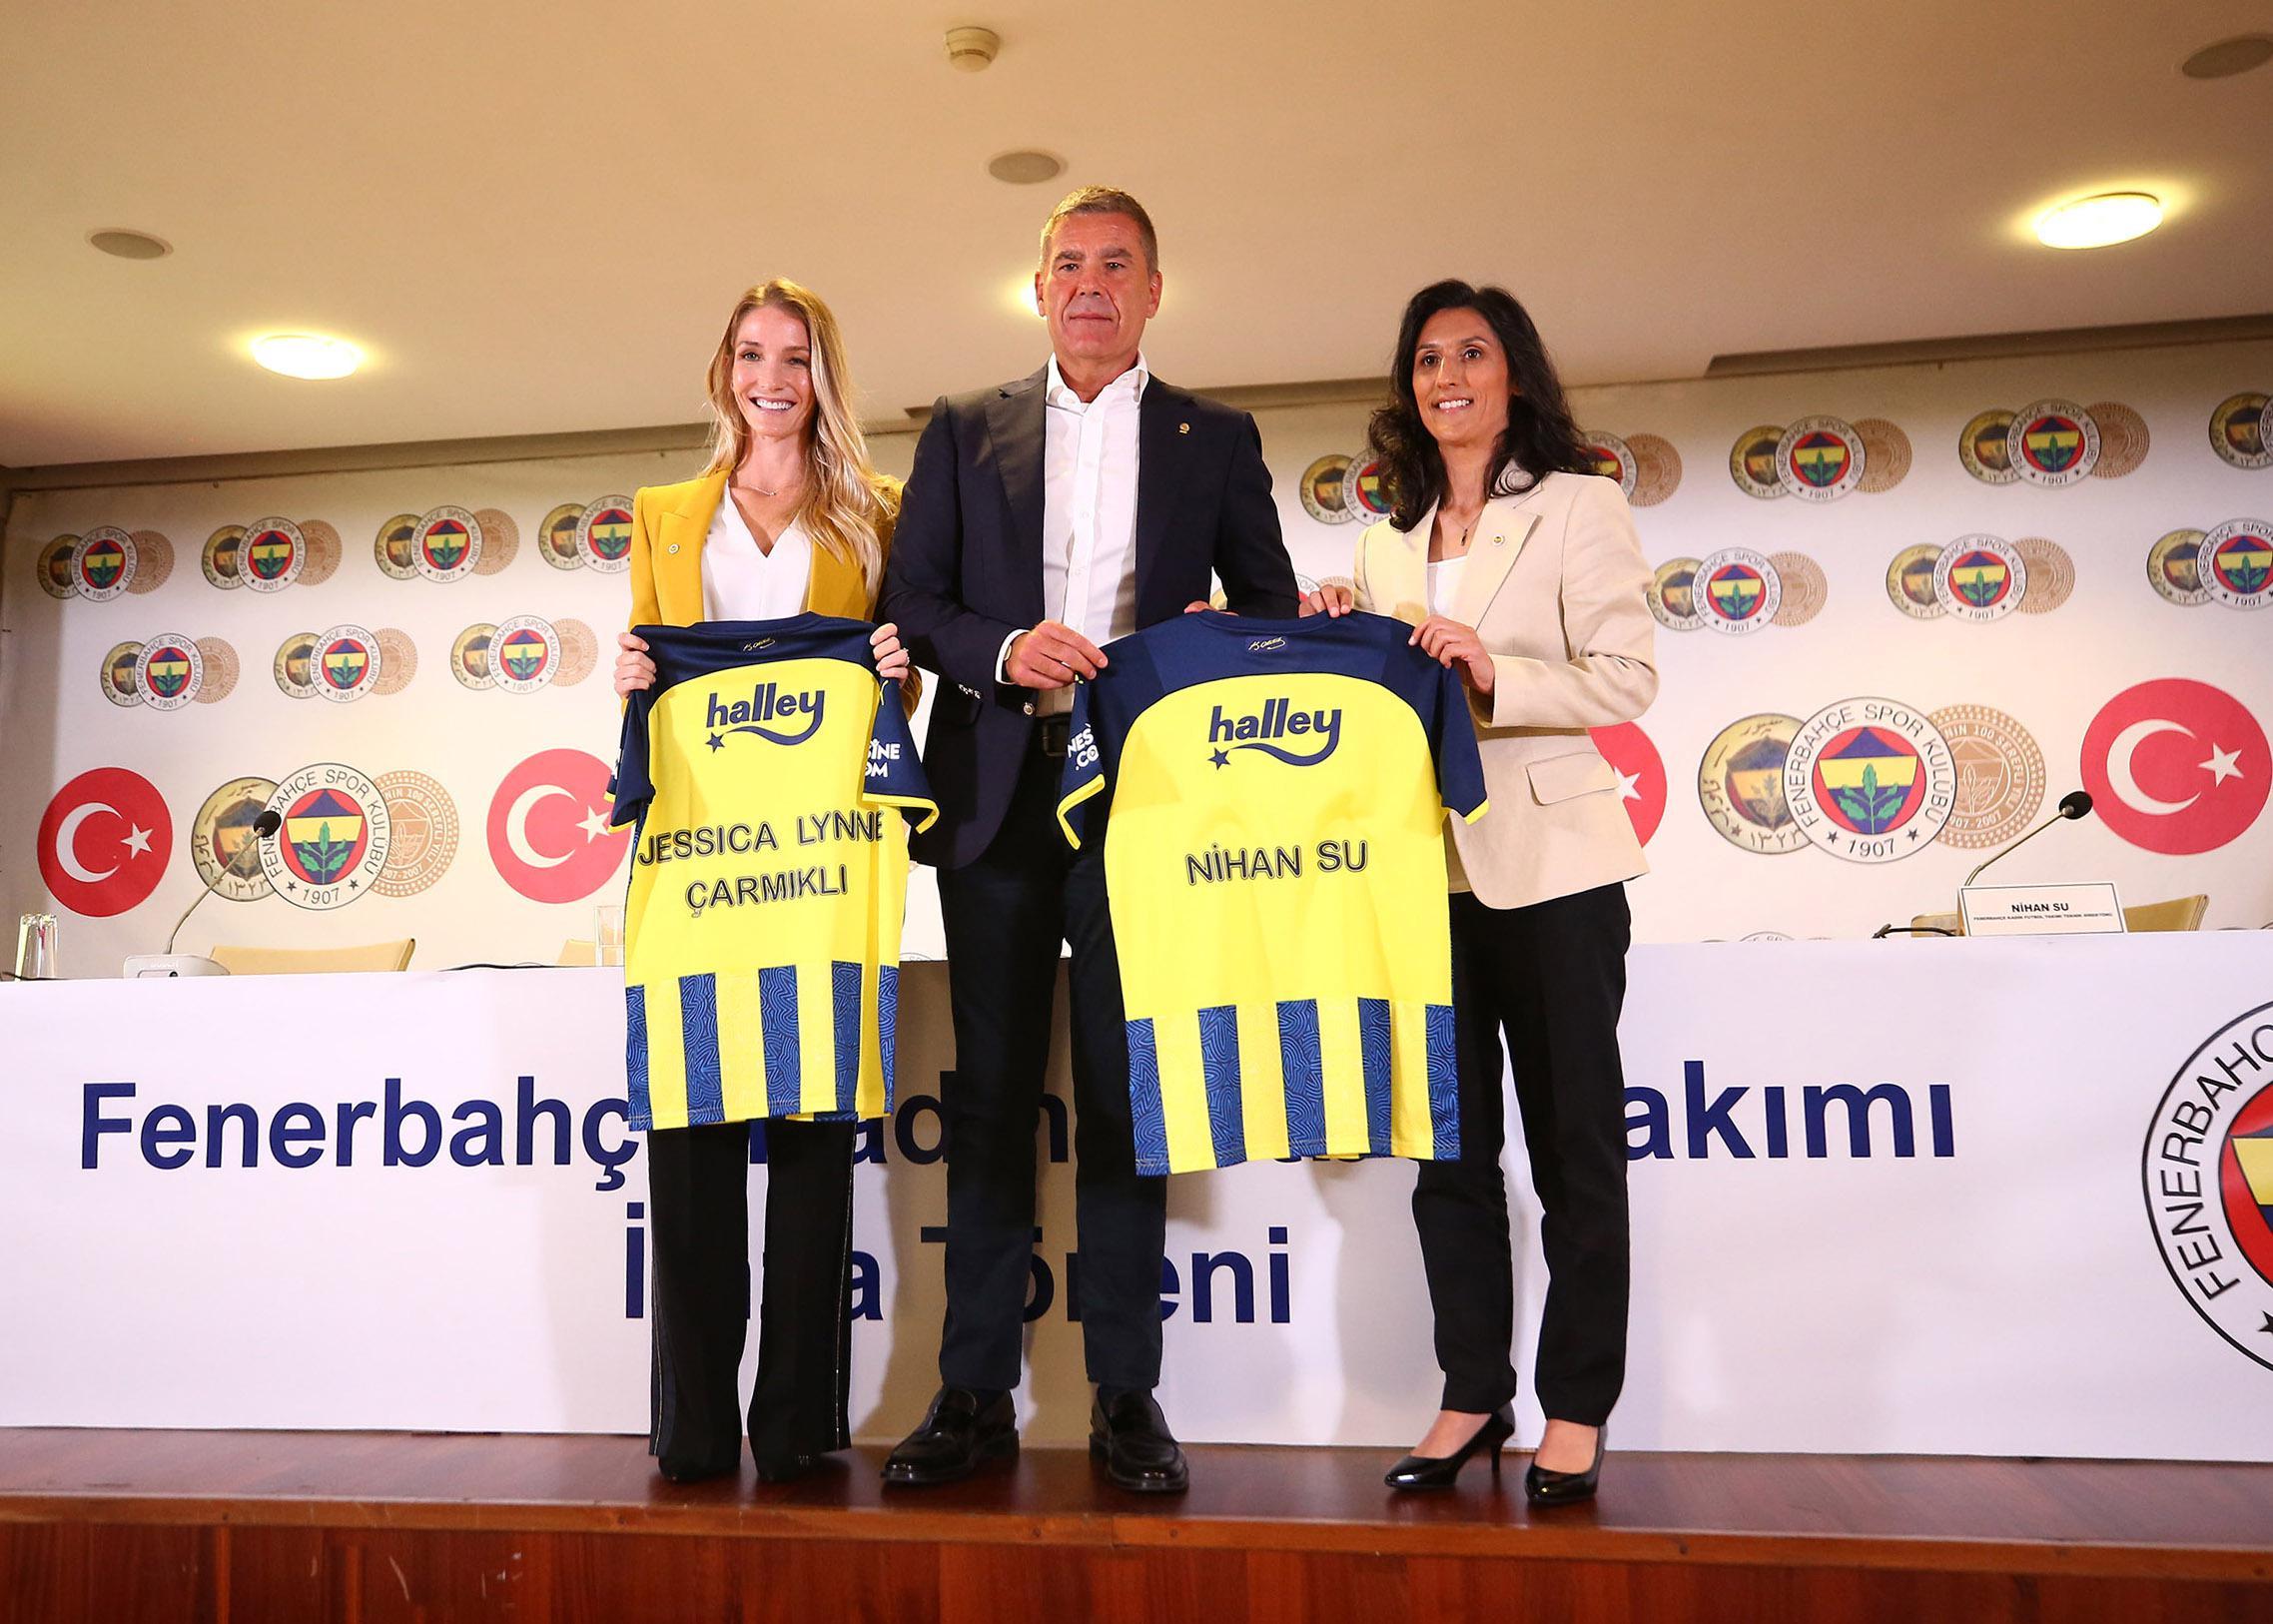 Fenerbahçe Kadın Futbol Takımı kuruldu ve ilk teknik direktör…